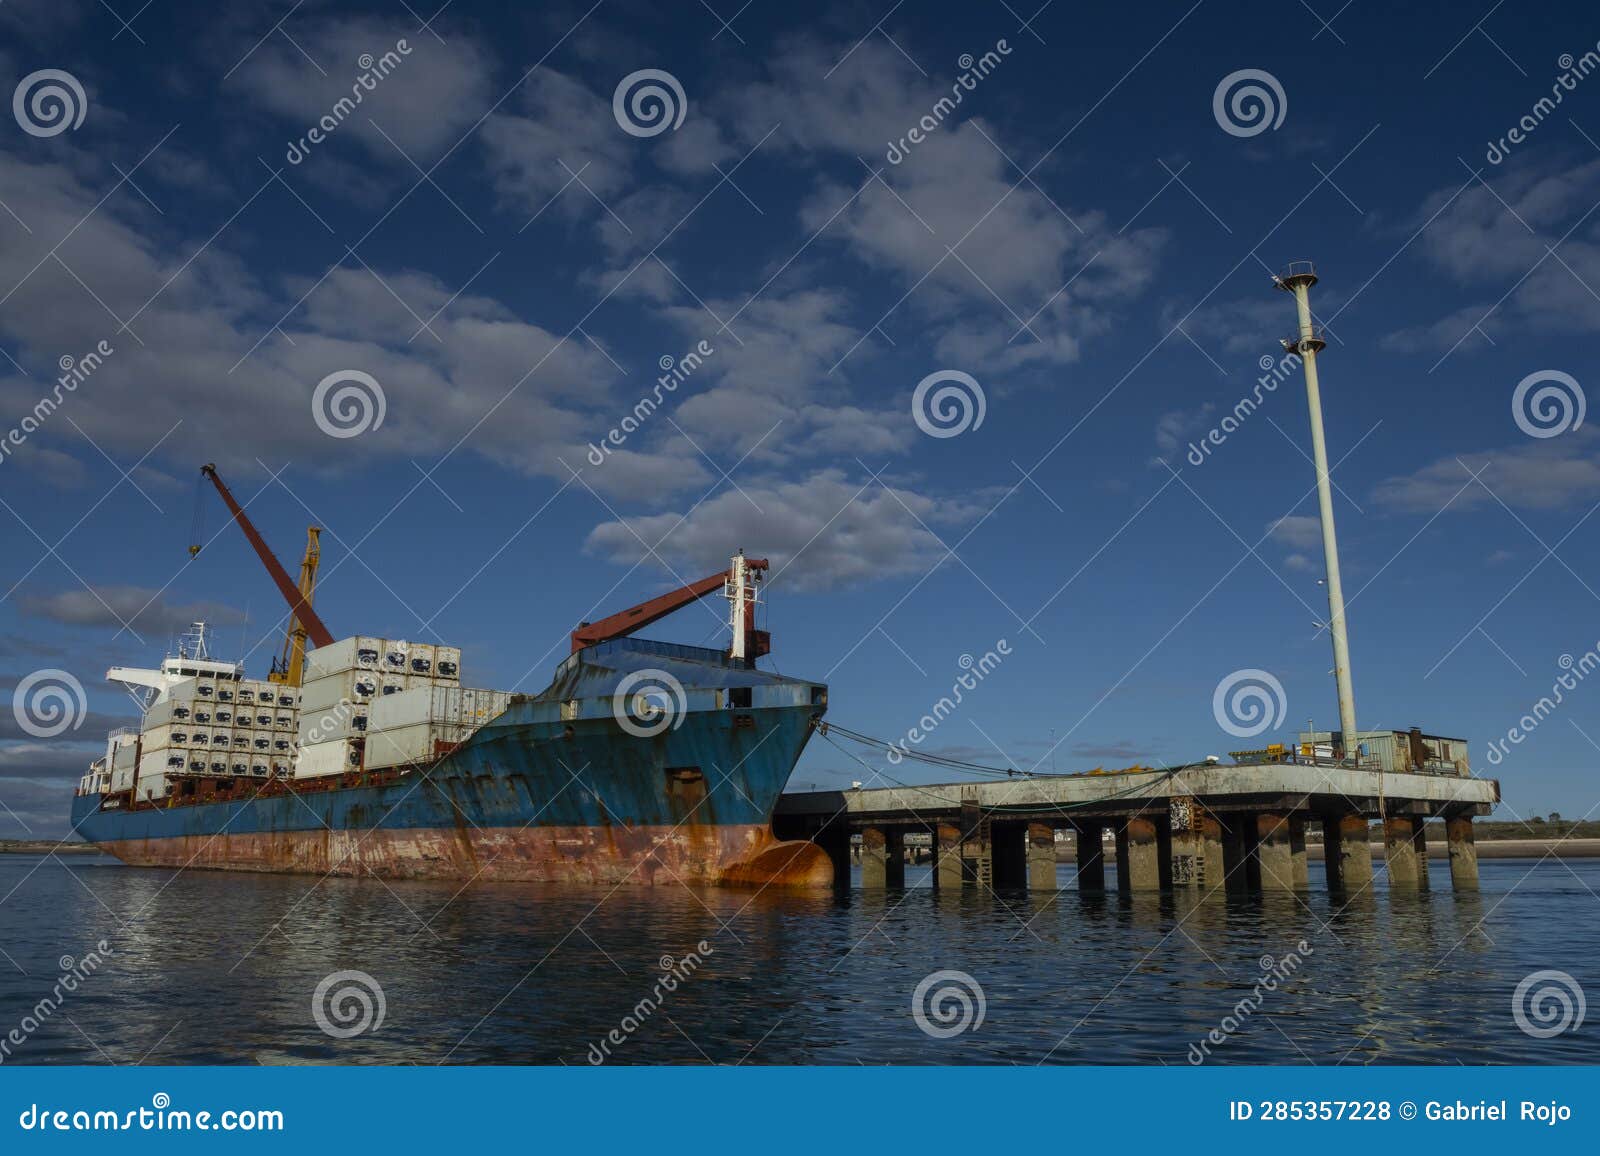 merchant ship moored in the port of san antonio este, rio negro